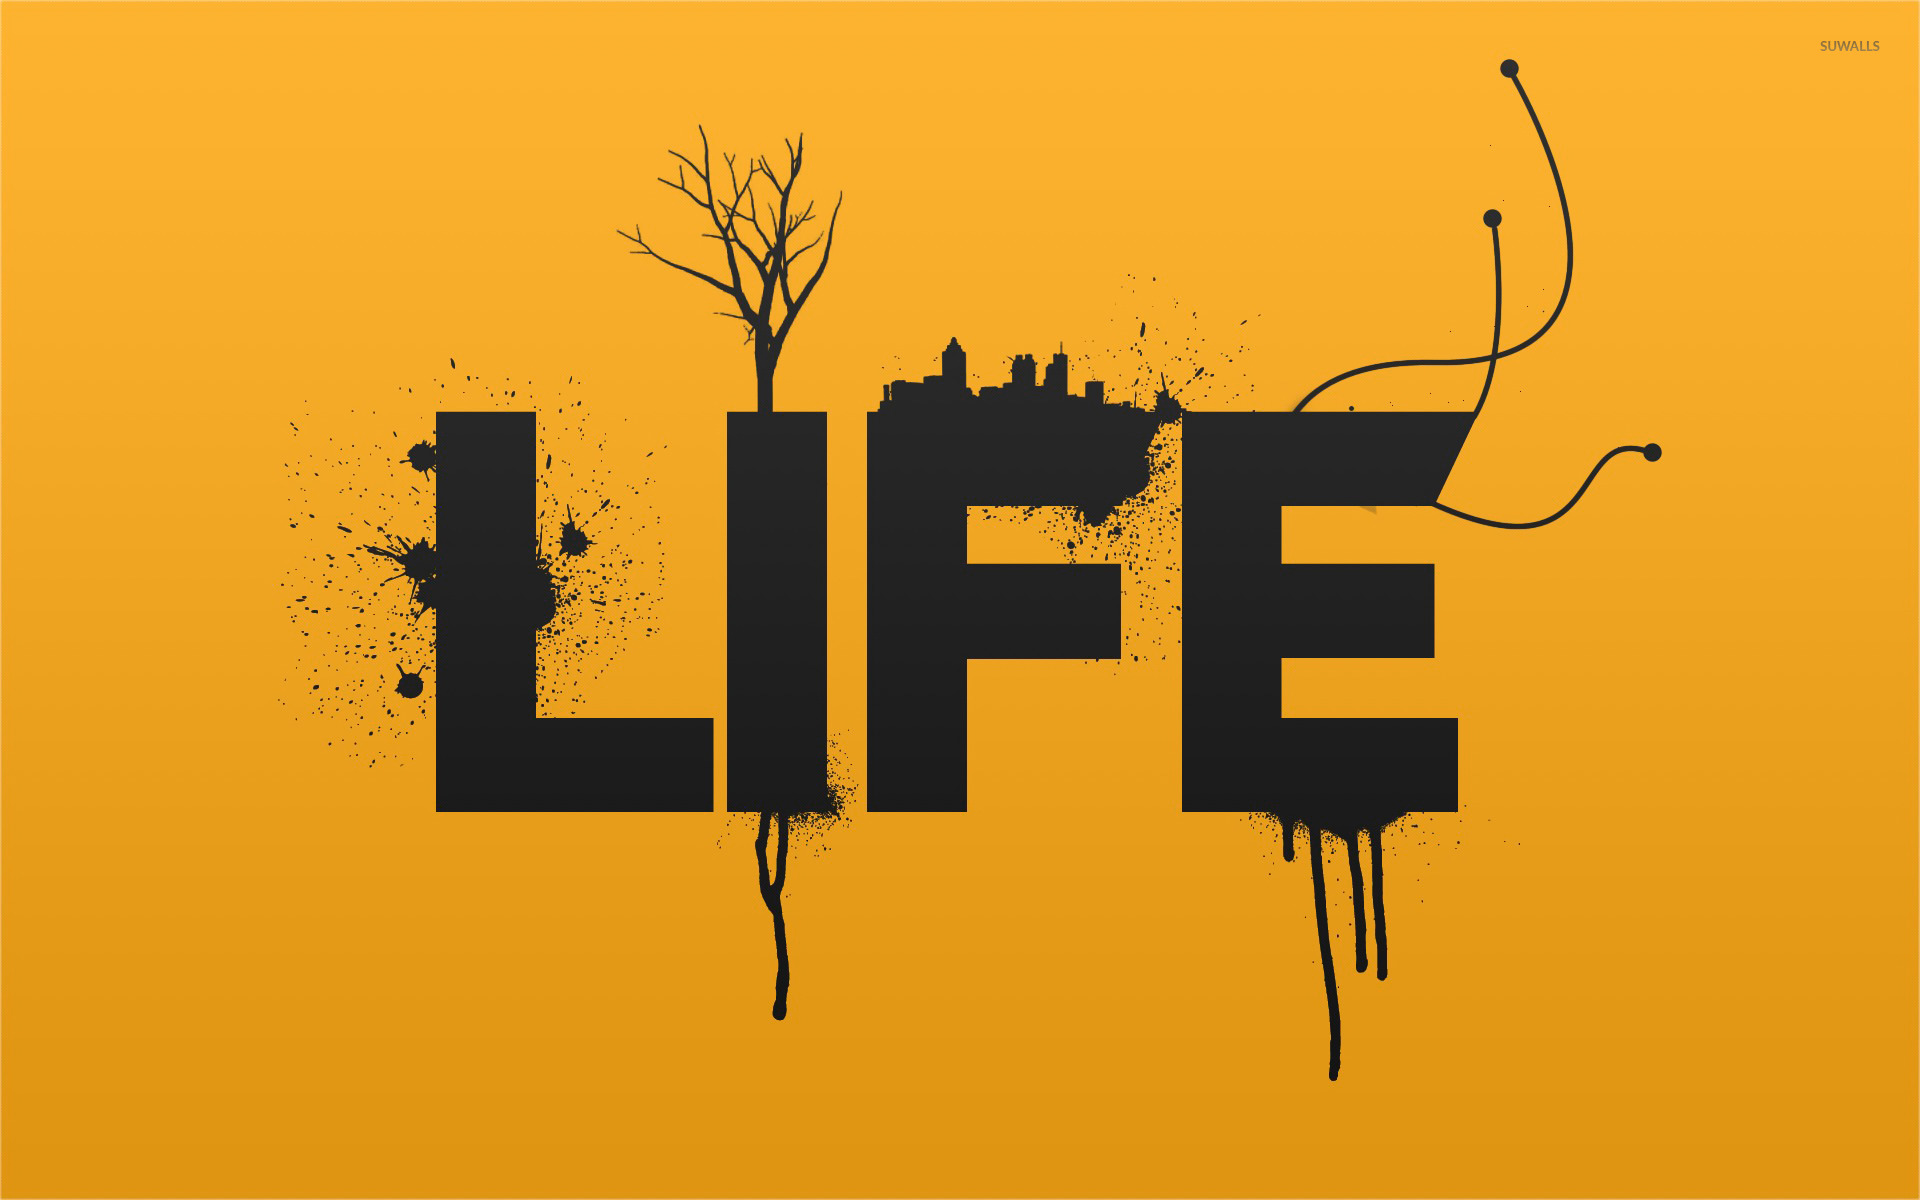 Sing is life. Life логотип. Лайф картинки. Картинки с надписью Life. Типографика в графическом дизайне.